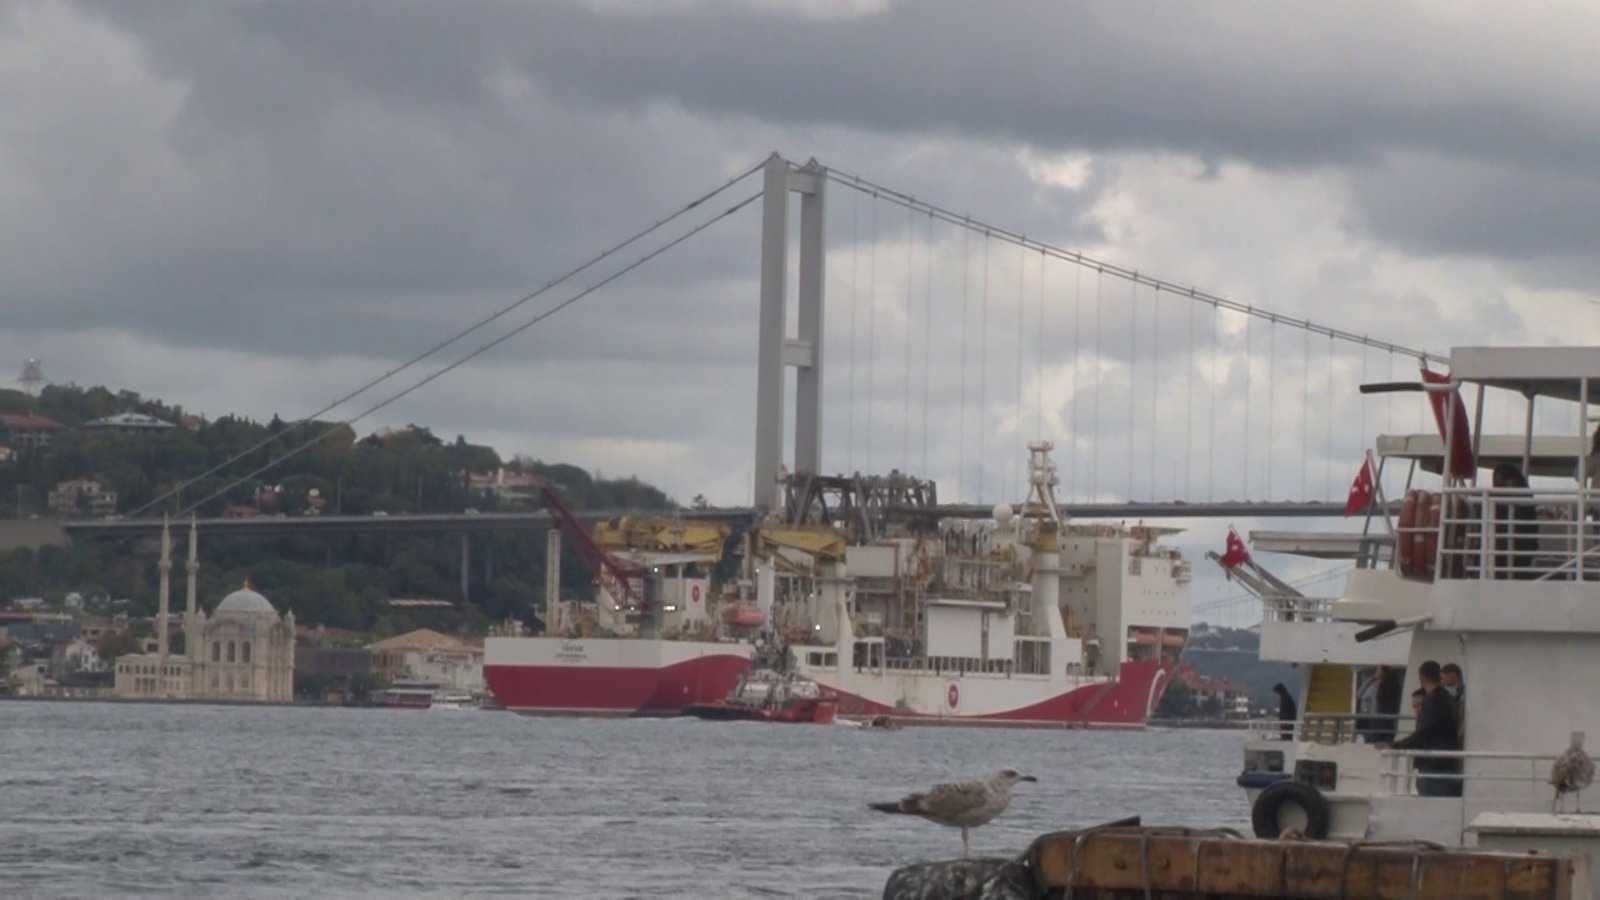 Yavuz Sondaj Gemisi  Karadeniz’e hareket etti #istanbul